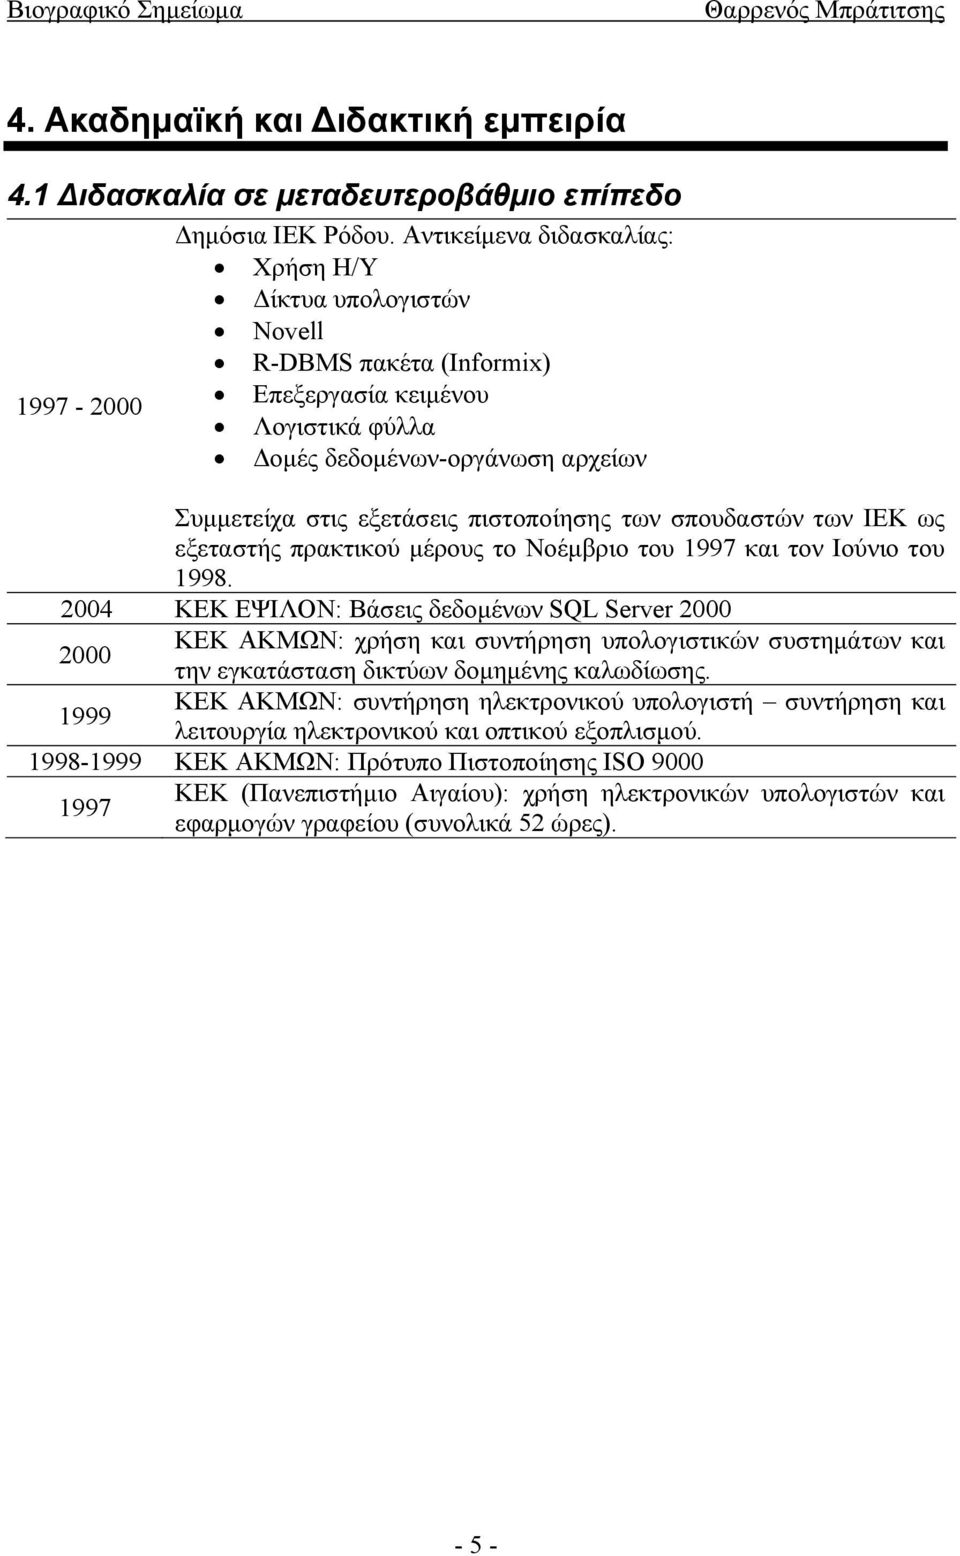 πιστοποίησης των σπουδαστών των ΙΕΚ ως εξεταστής πρακτικού μέρους το Νοέμβριο του 1997 και τον Ιούνιο του 1998.